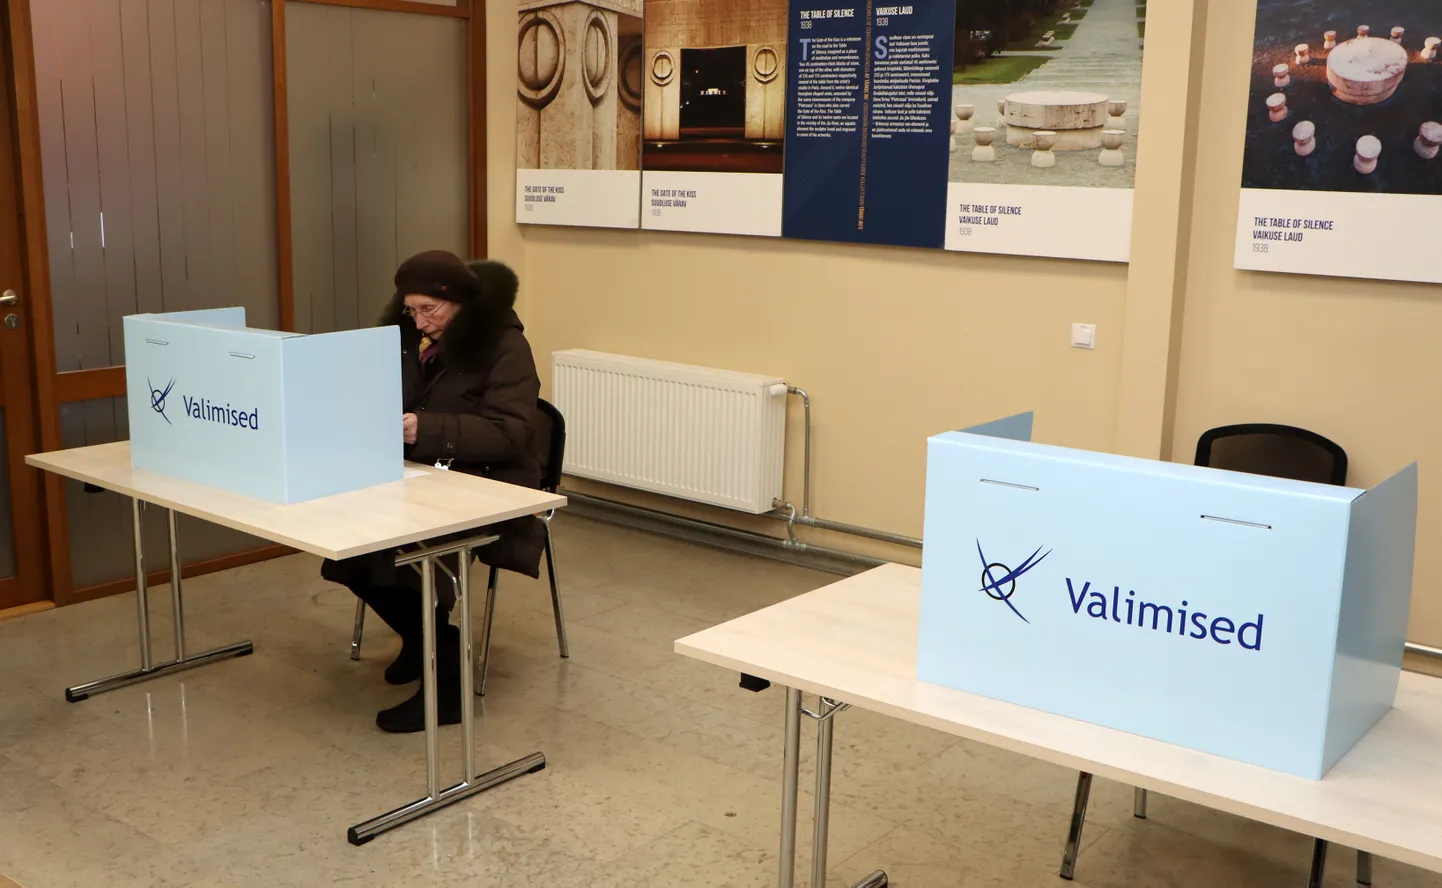 Один из восьми ида-вируских избирательных участков, где можно голосовать в течение всей недели, находится в Йыхвиском волостном управлении.